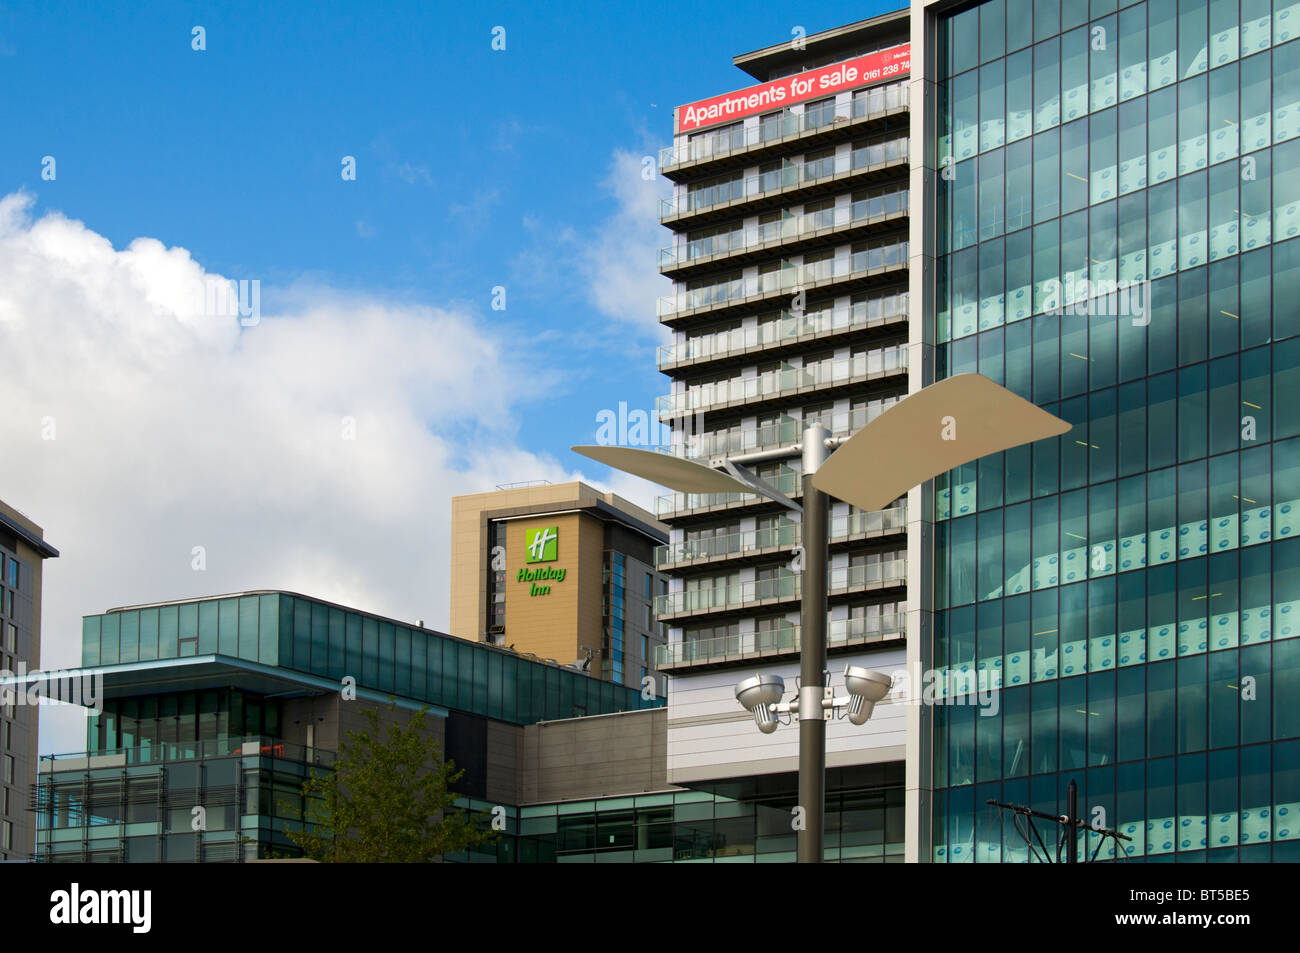 Gli uffici e gli appartamenti del complesso MediaCityUK a Salford Quays, Manchester, Regno Unito Foto Stock